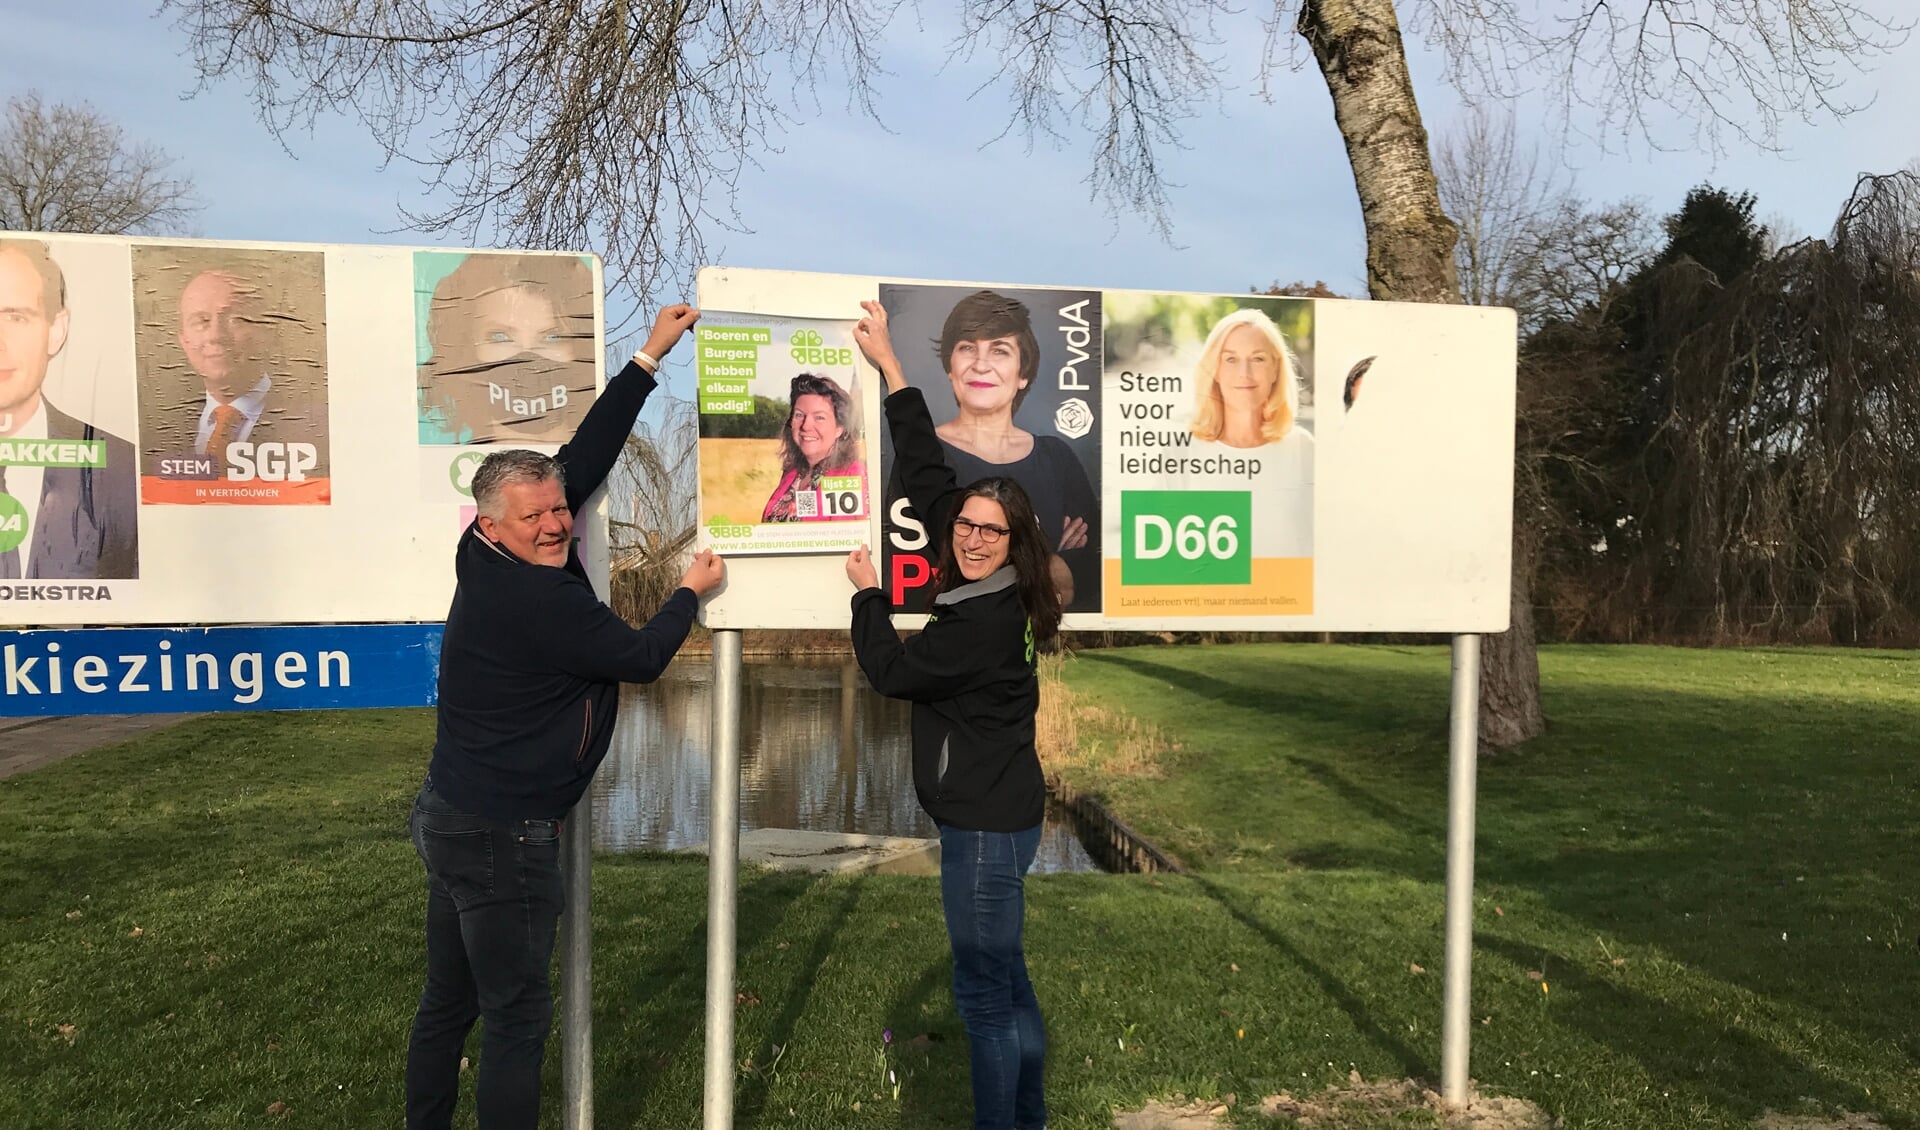 Philip den Haan en Jacoline Peek plakken posters in Werkendam.